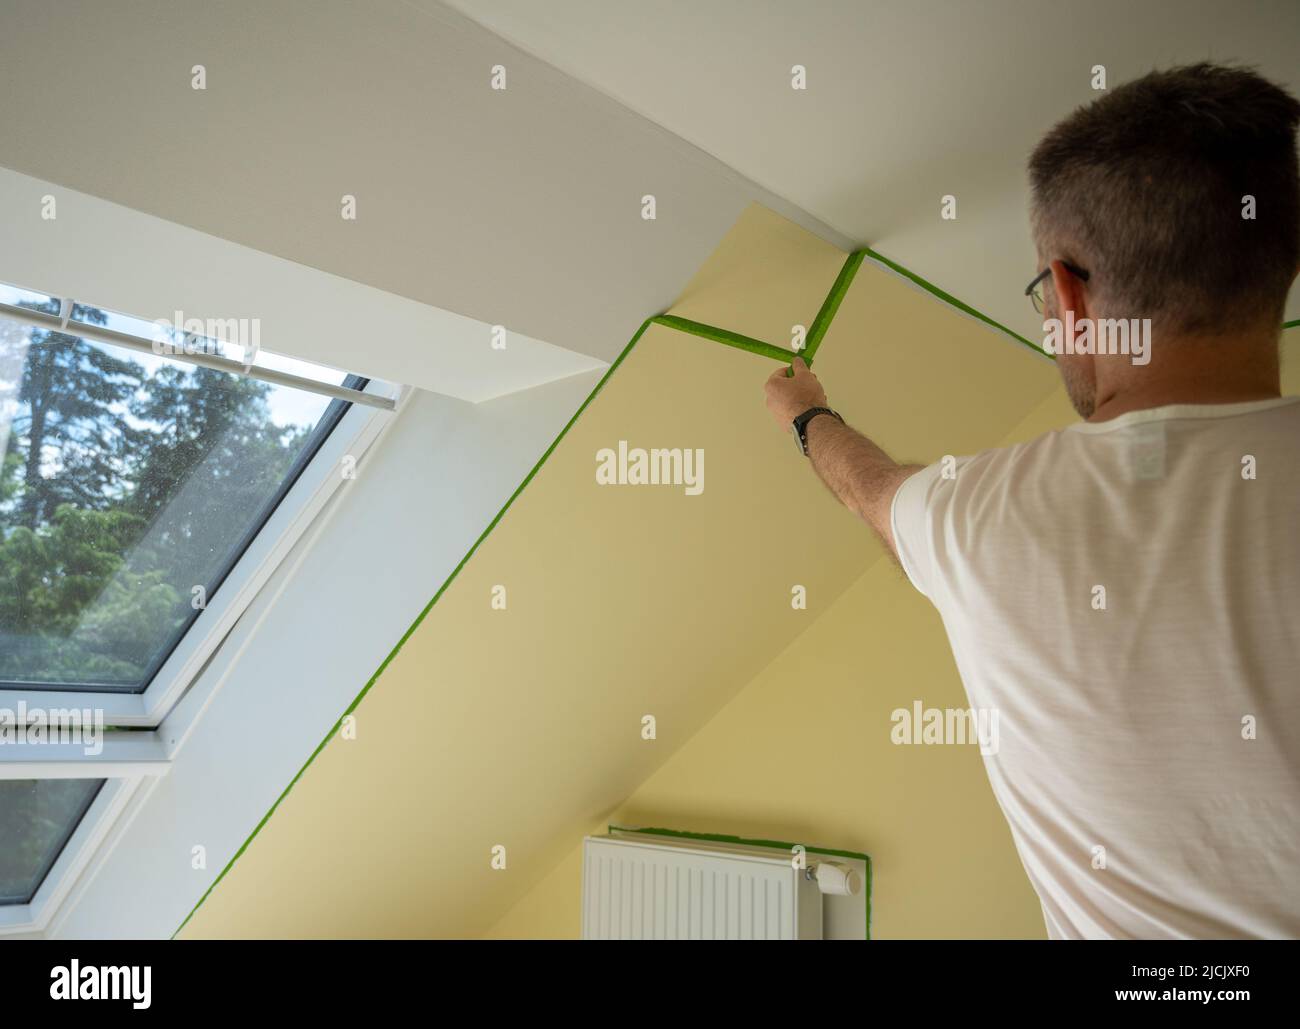 Painter elimina la cinta de enmascarar y crea un borde afilado entre una parte pintada de amarillo y blanco de una pared. Foto de stock